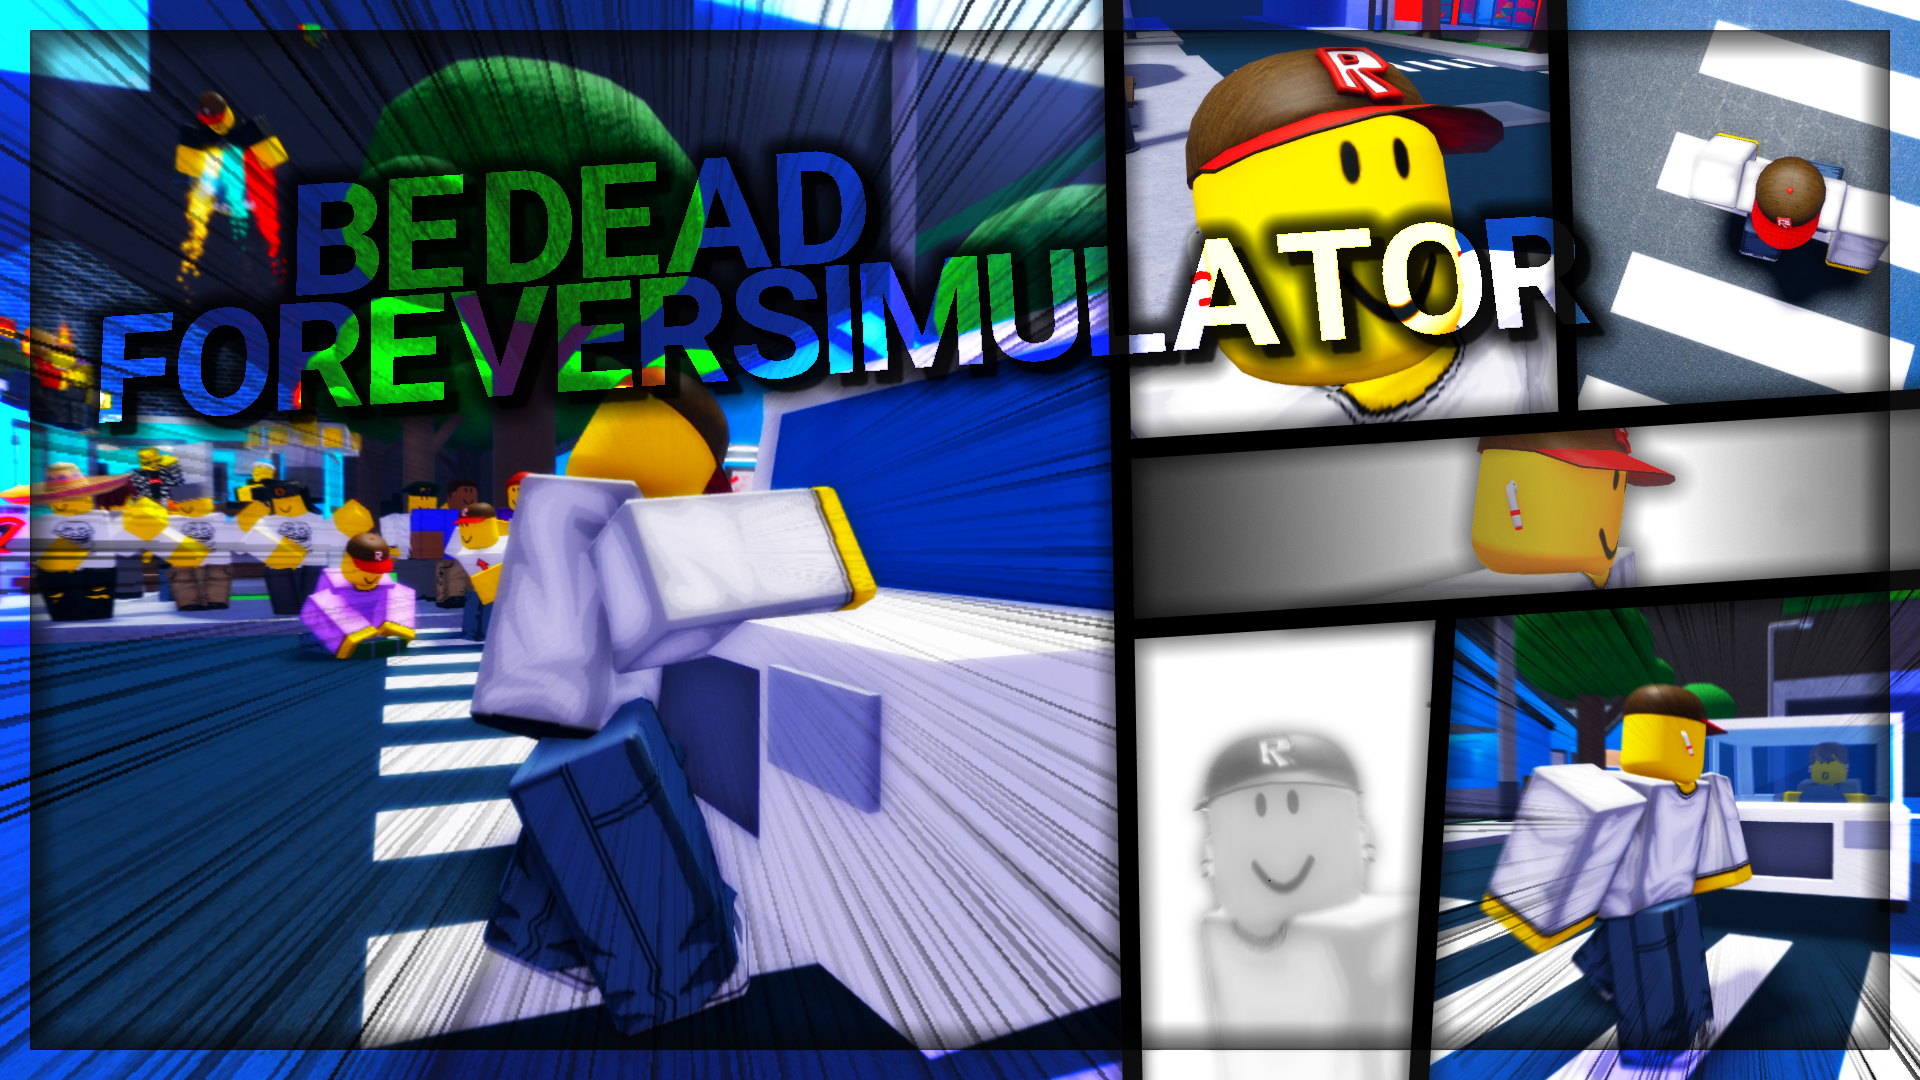 Be Dead Forever Simulator Roblox Wiki Fandom - los sims 4 roblox